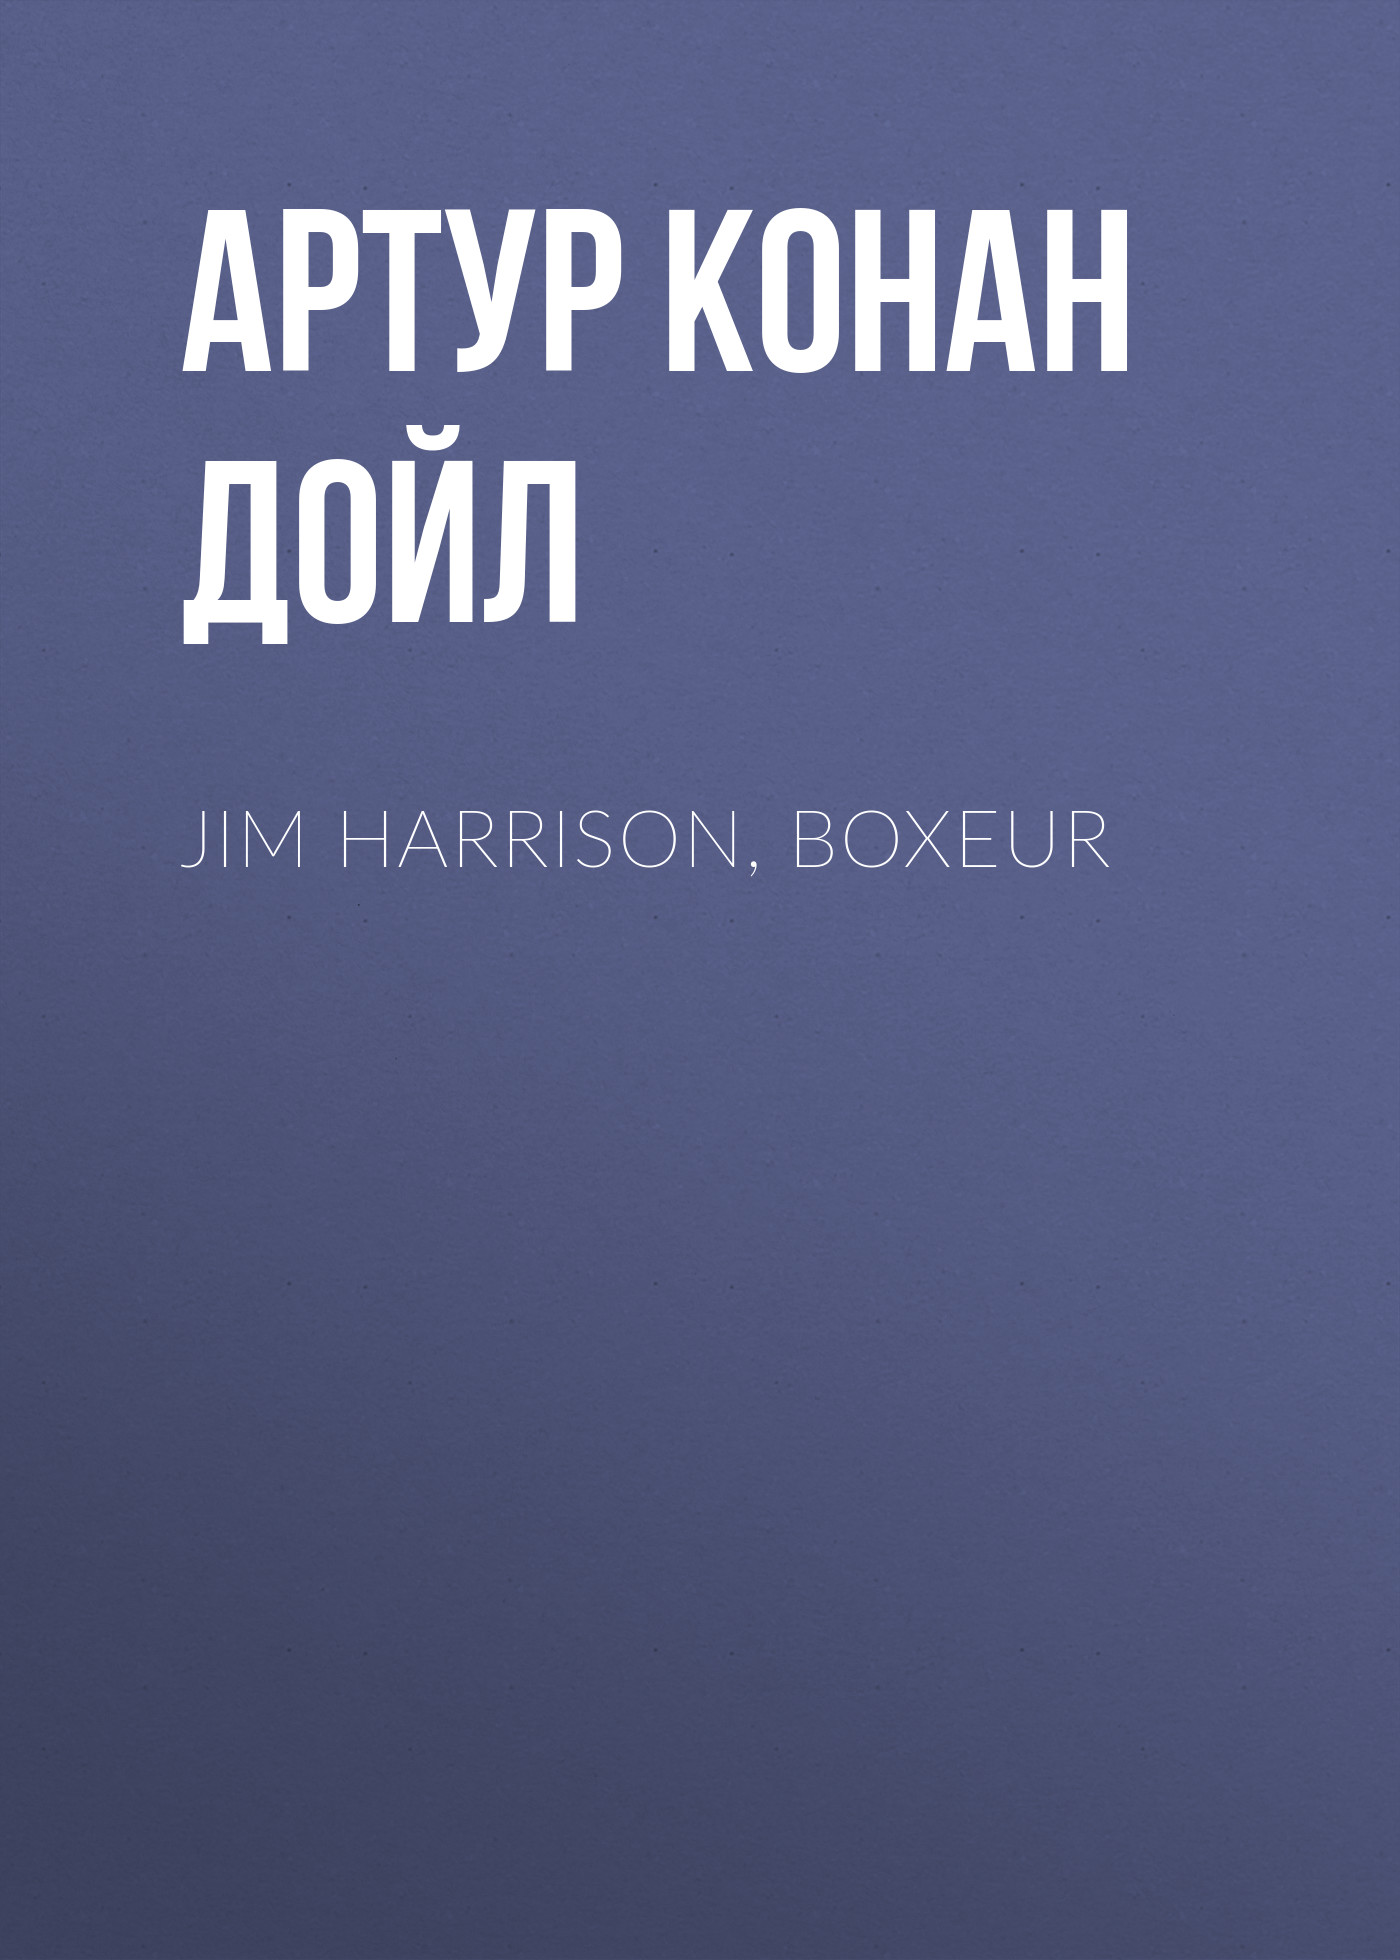 Книга Jim Harrison, boxeur из серии , созданная Артур Дойл, может относится к жанру Зарубежная старинная литература, Зарубежная классика. Стоимость электронной книги Jim Harrison, boxeur с идентификатором 25092516 составляет 0 руб.